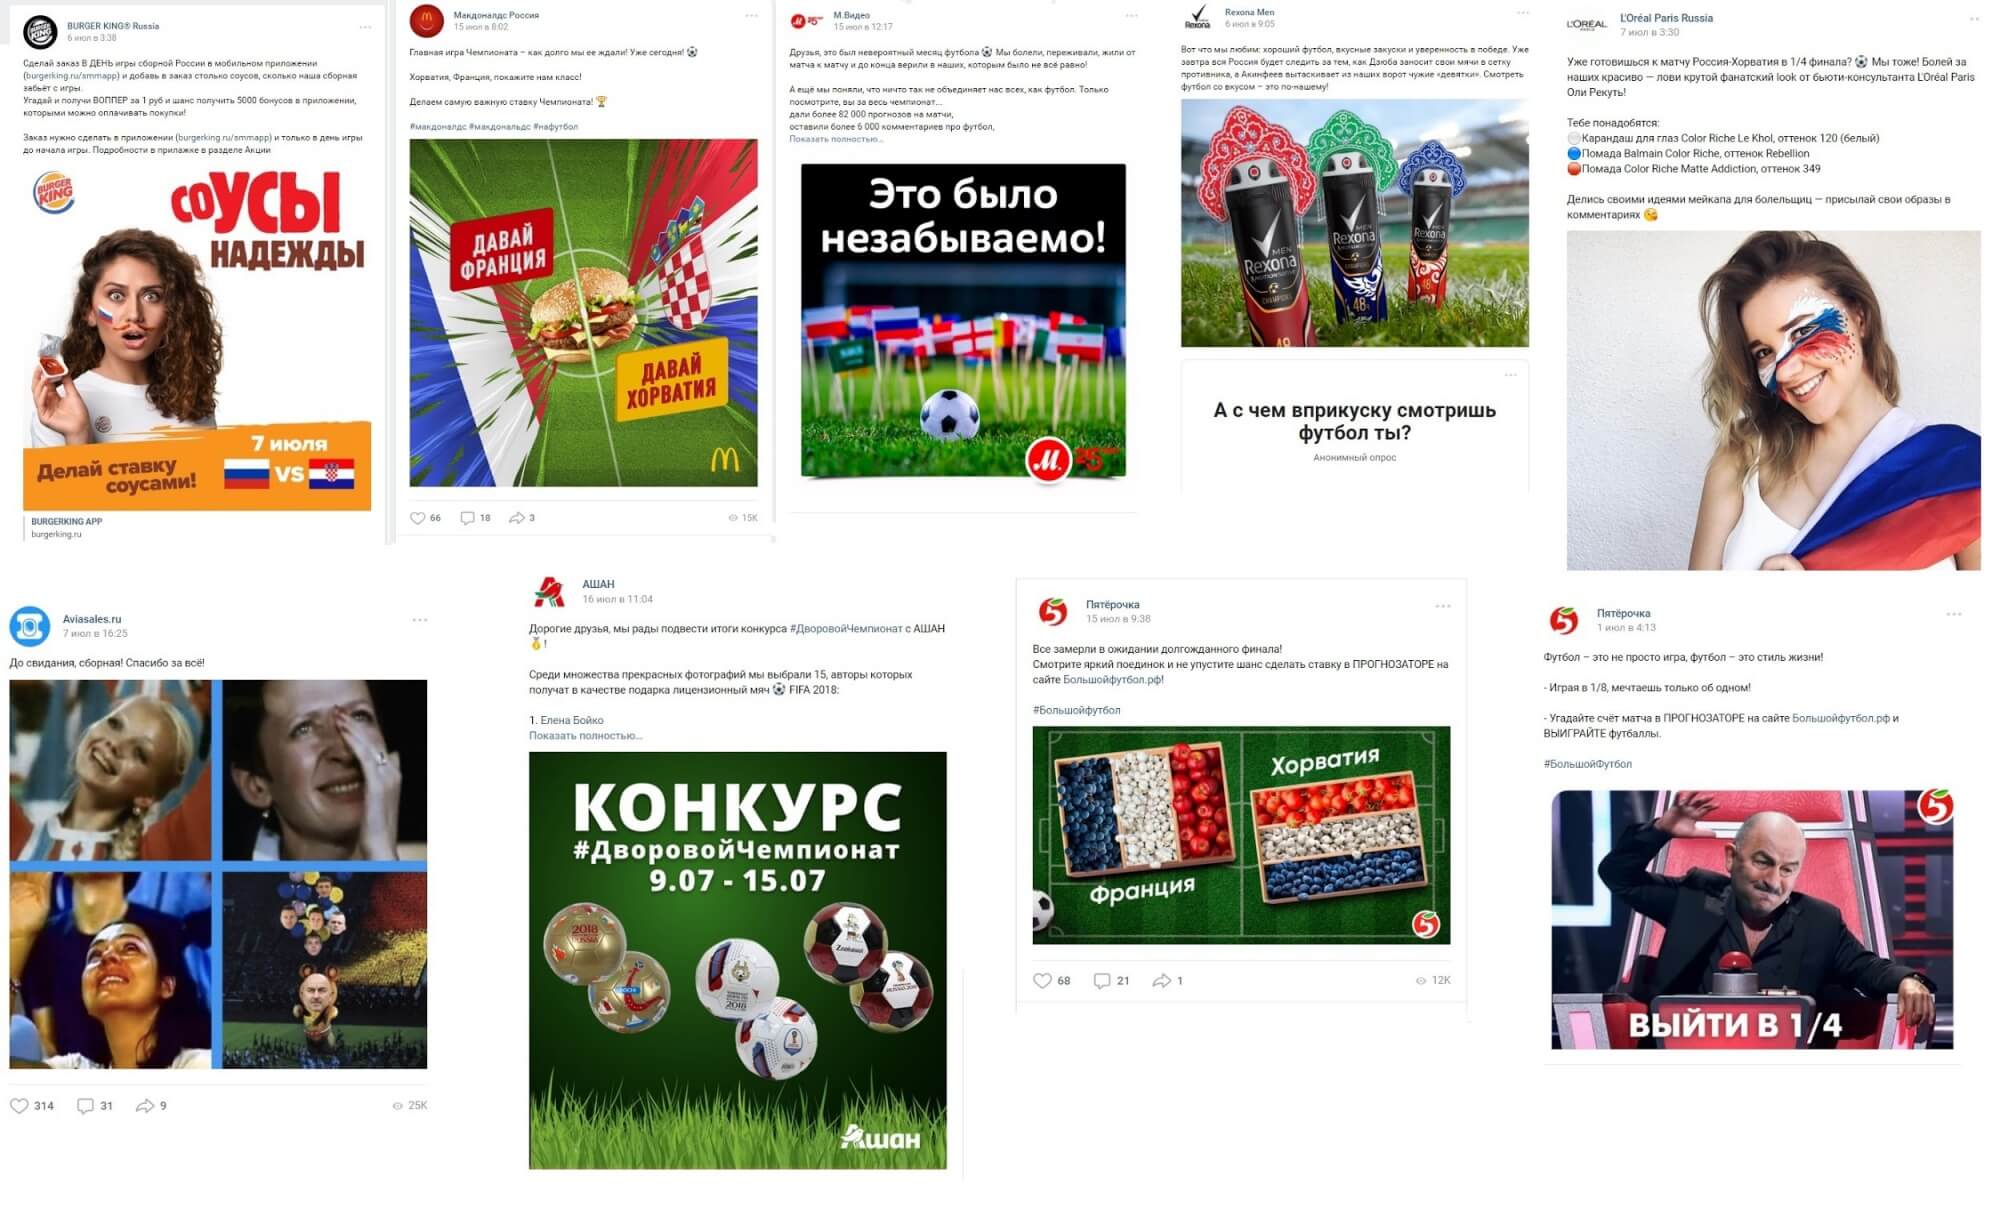 Примеры использования футбольной тематики в рекламе.jpg